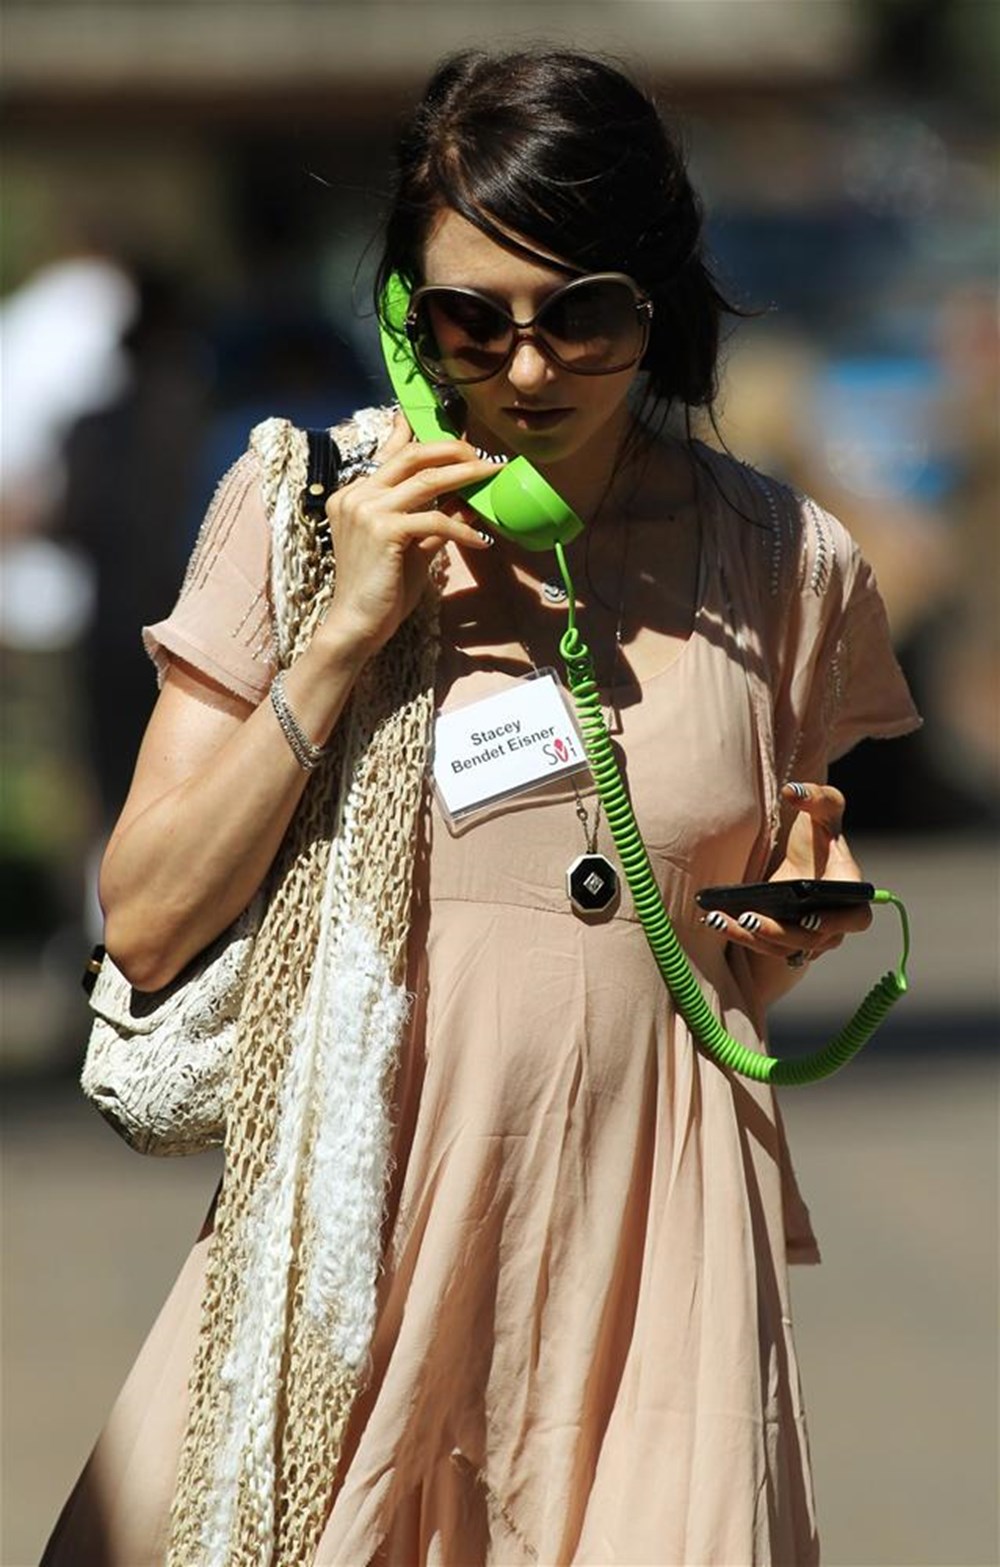 Безумные вещи. Девочка с зелёной трубкой. Звезды с трубкой телефона.